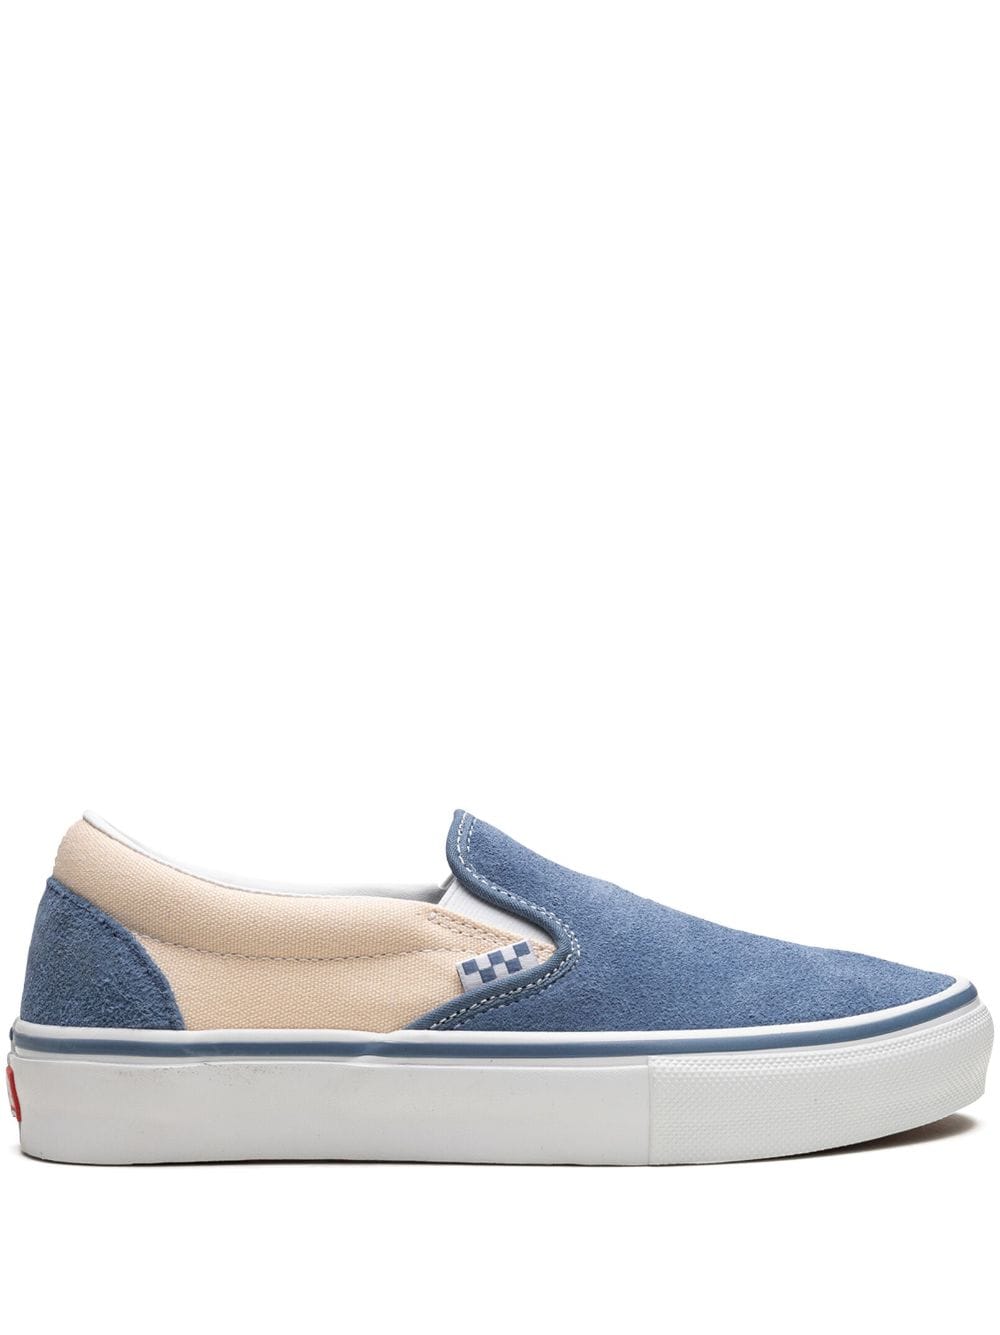 Vans Skate Slip-On "Cream" sneakers - Blue von Vans